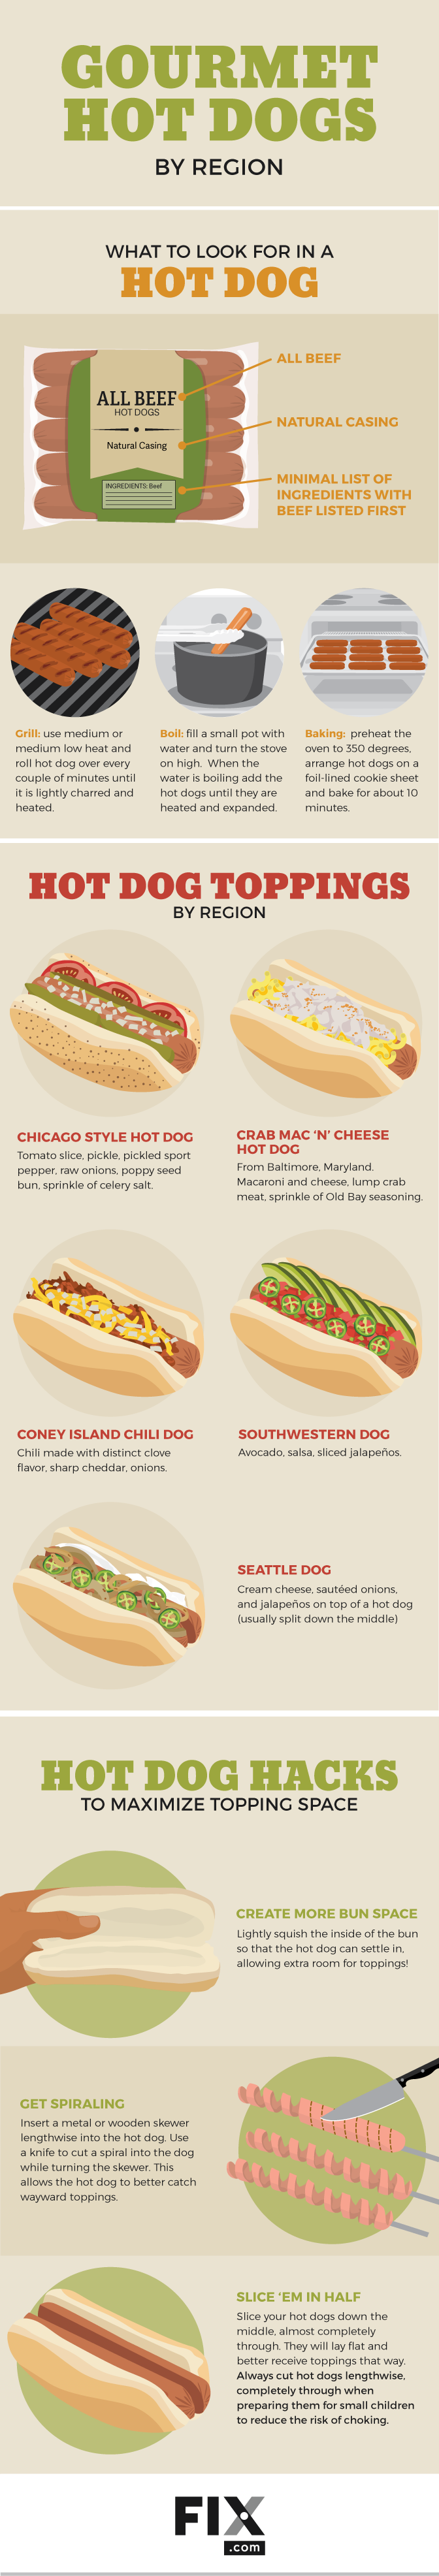 Gourmet Hot Dog Recipes | Fix.com